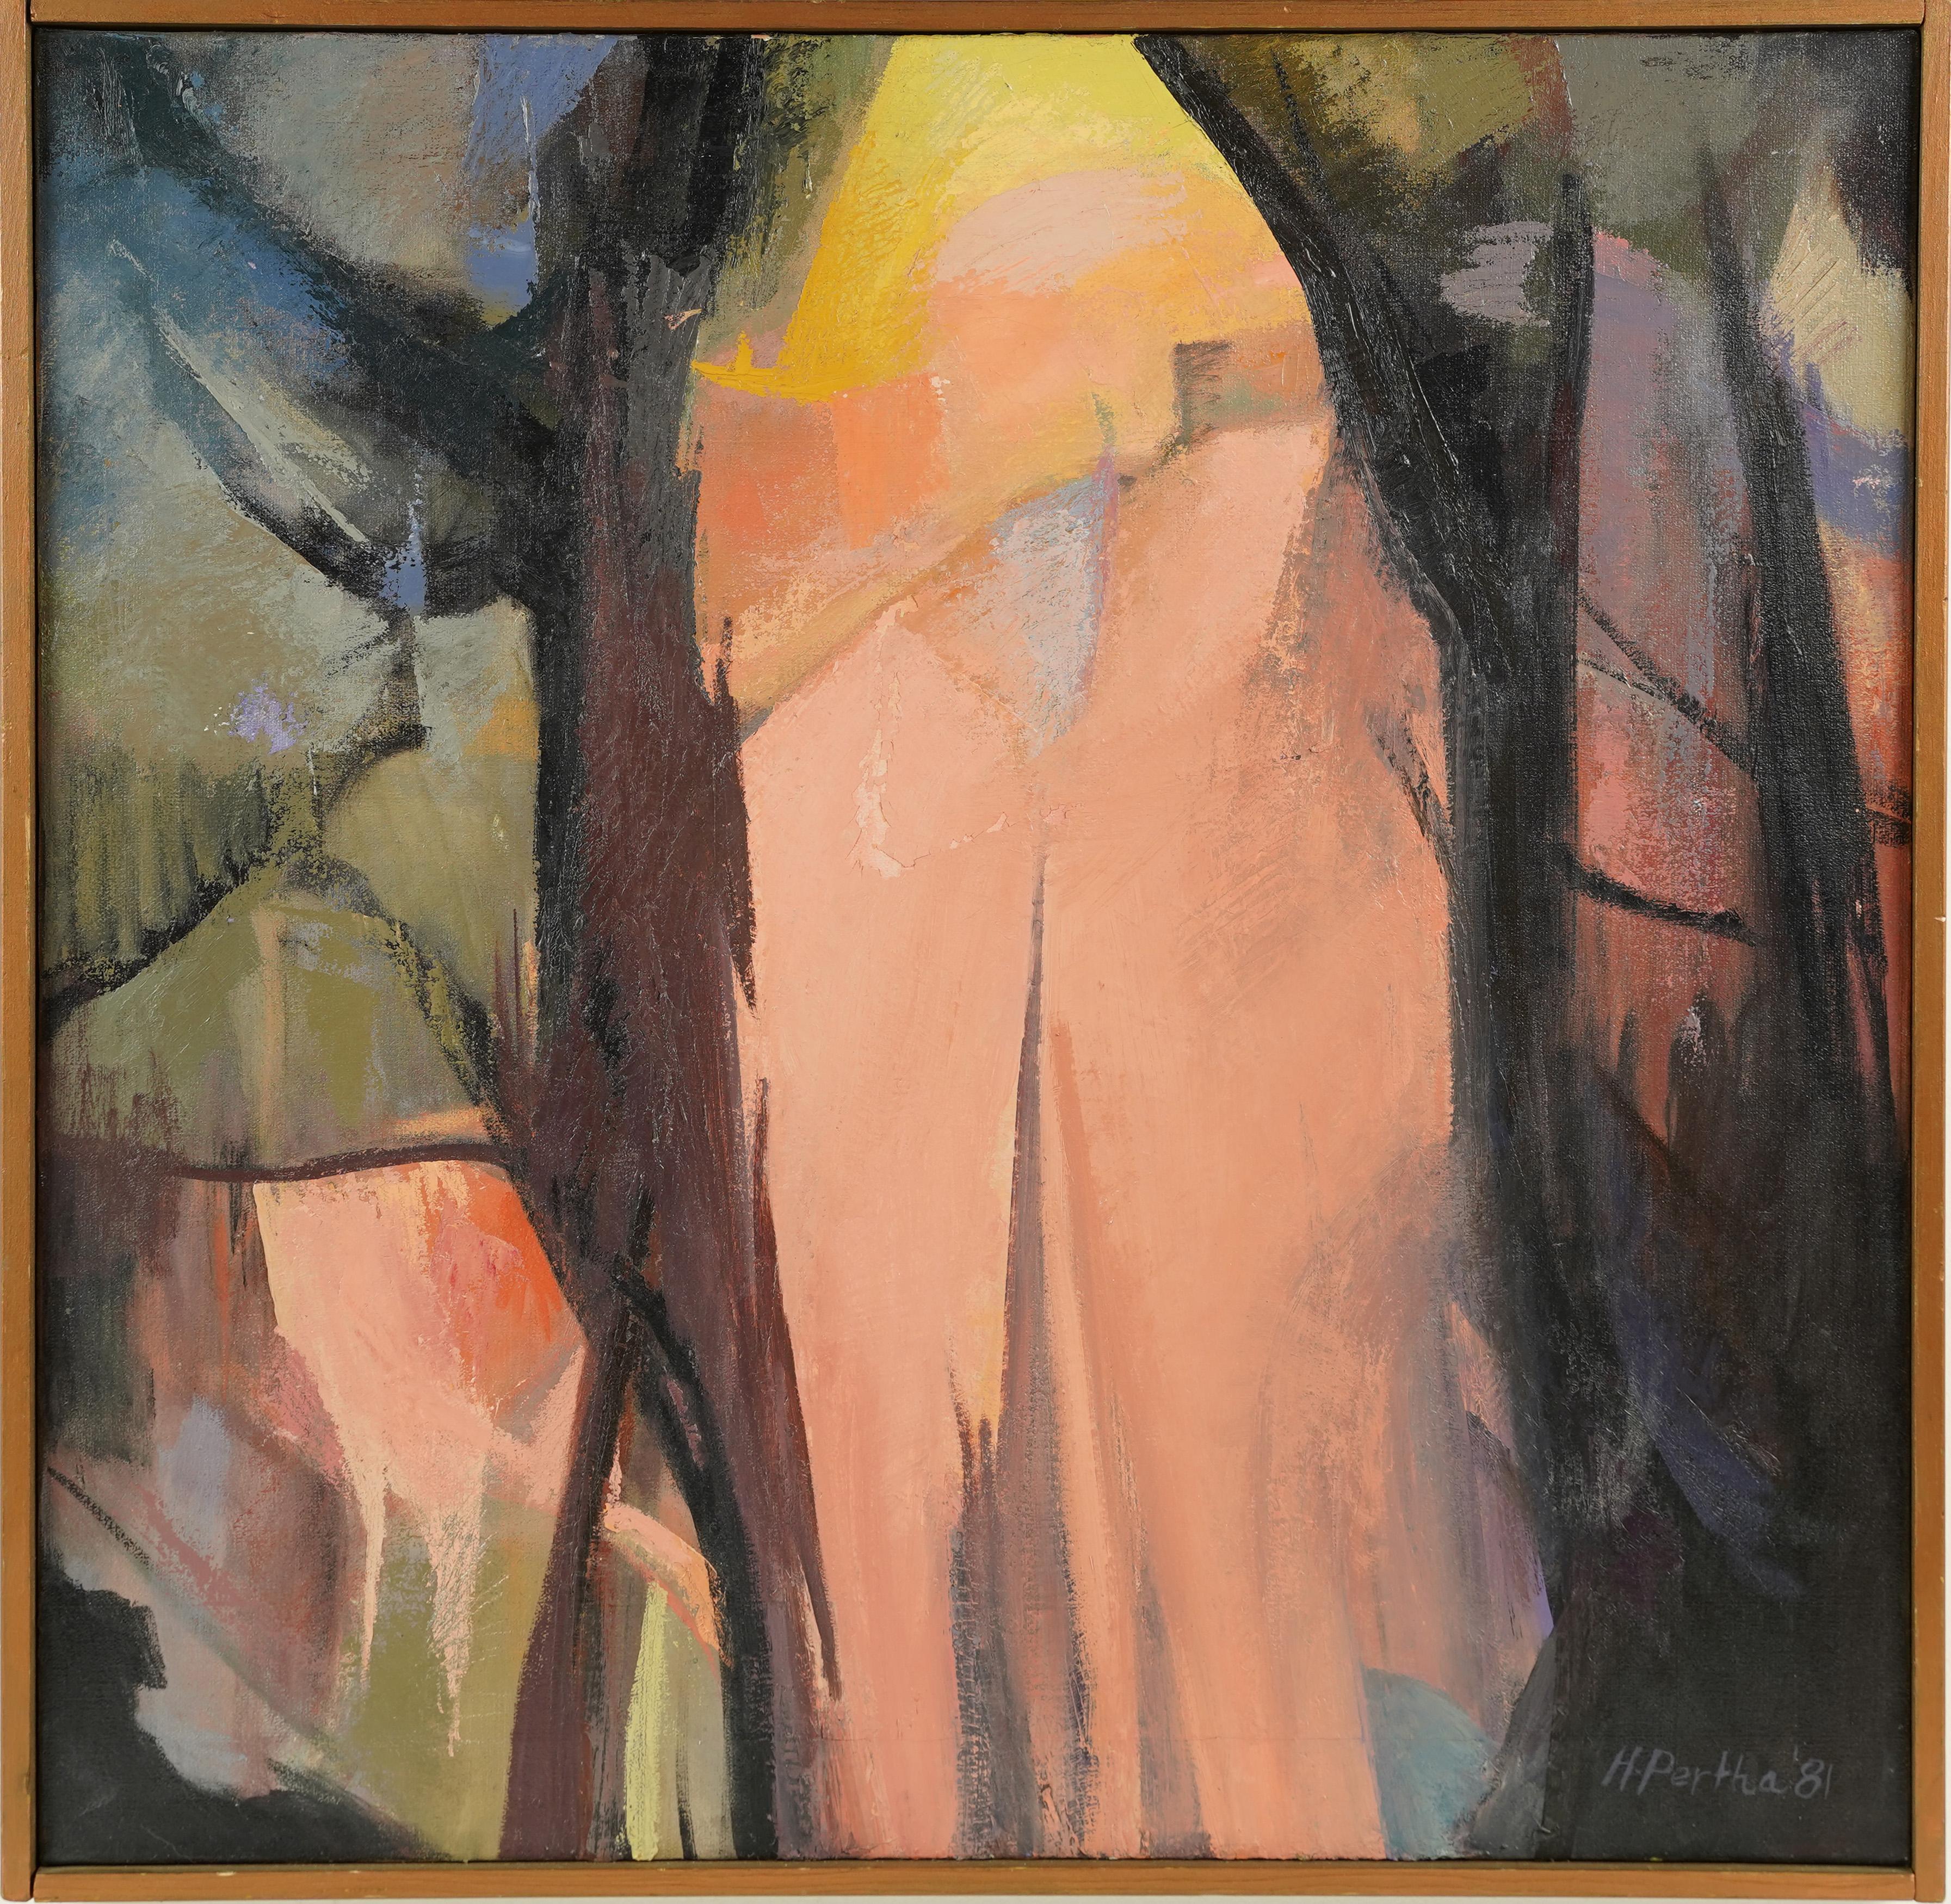  Antiquité américaine, grande peinture féminine expressionniste abstraite, paysage de coucher de soleil